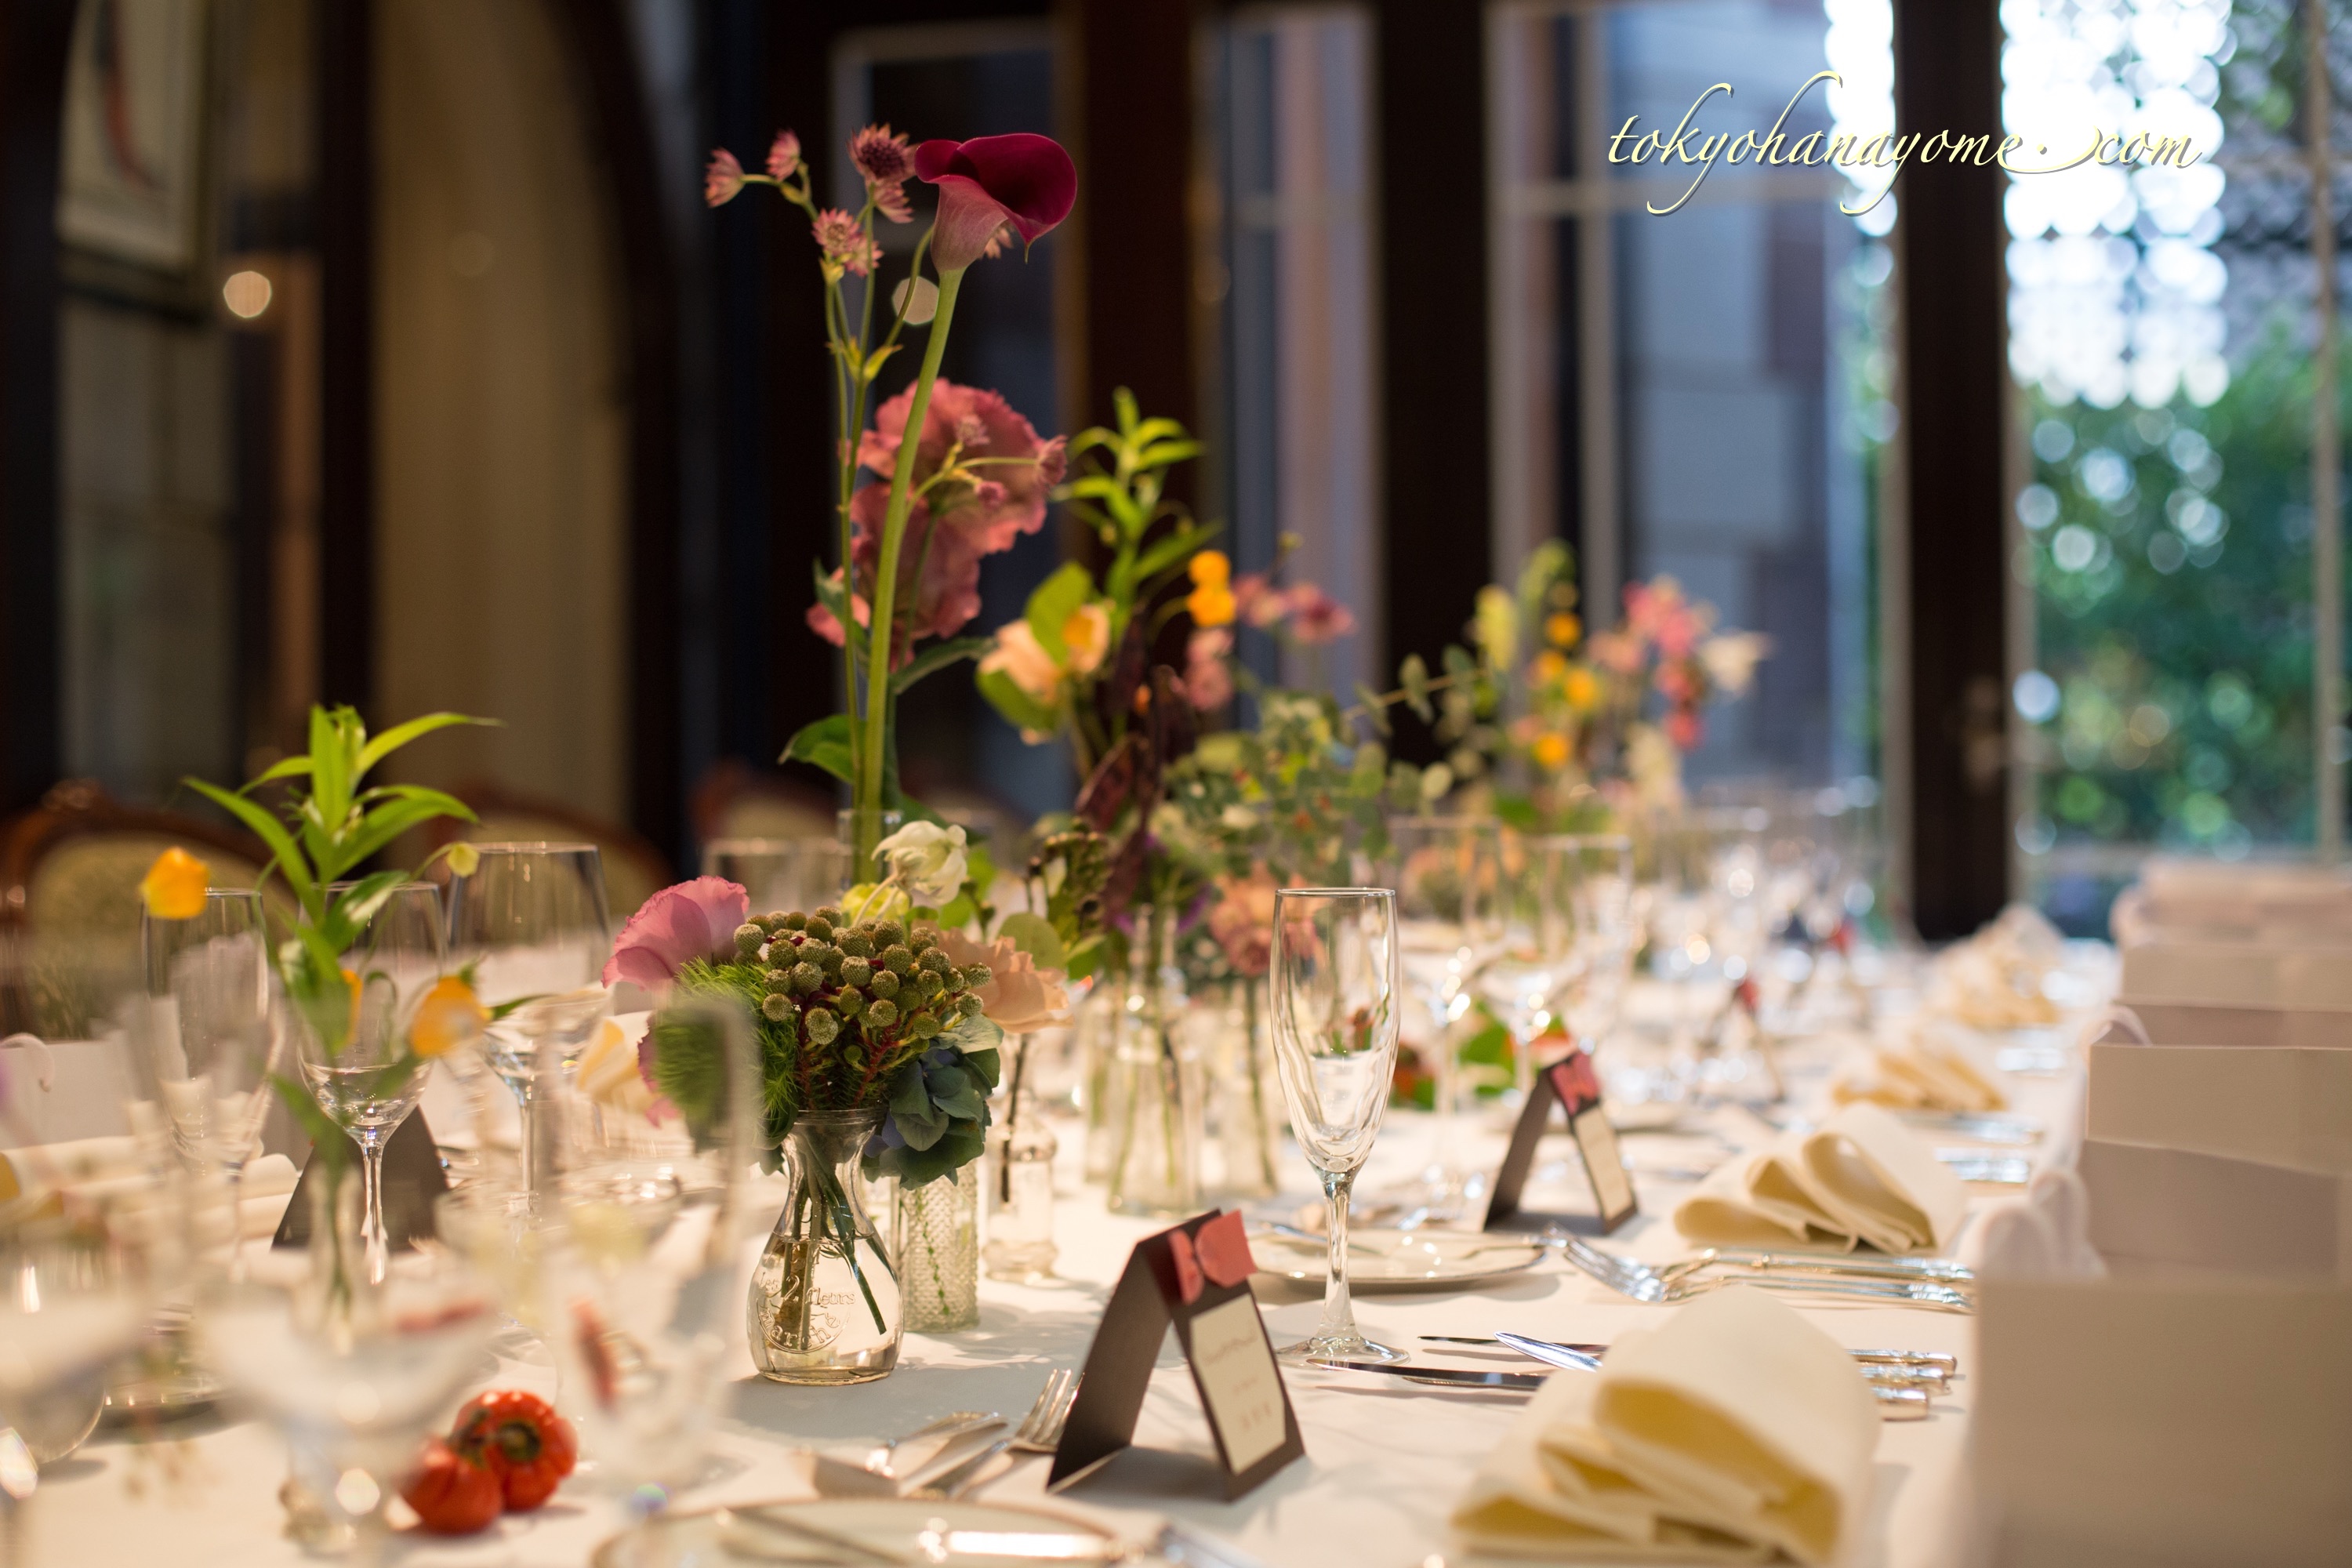 会場装花 打ち合わせから当日のテーブルコーディネートまで写真付きで紹介します 秋婚レストラン ウェディング 結婚式準備のことなら東京ハナヨメブログ